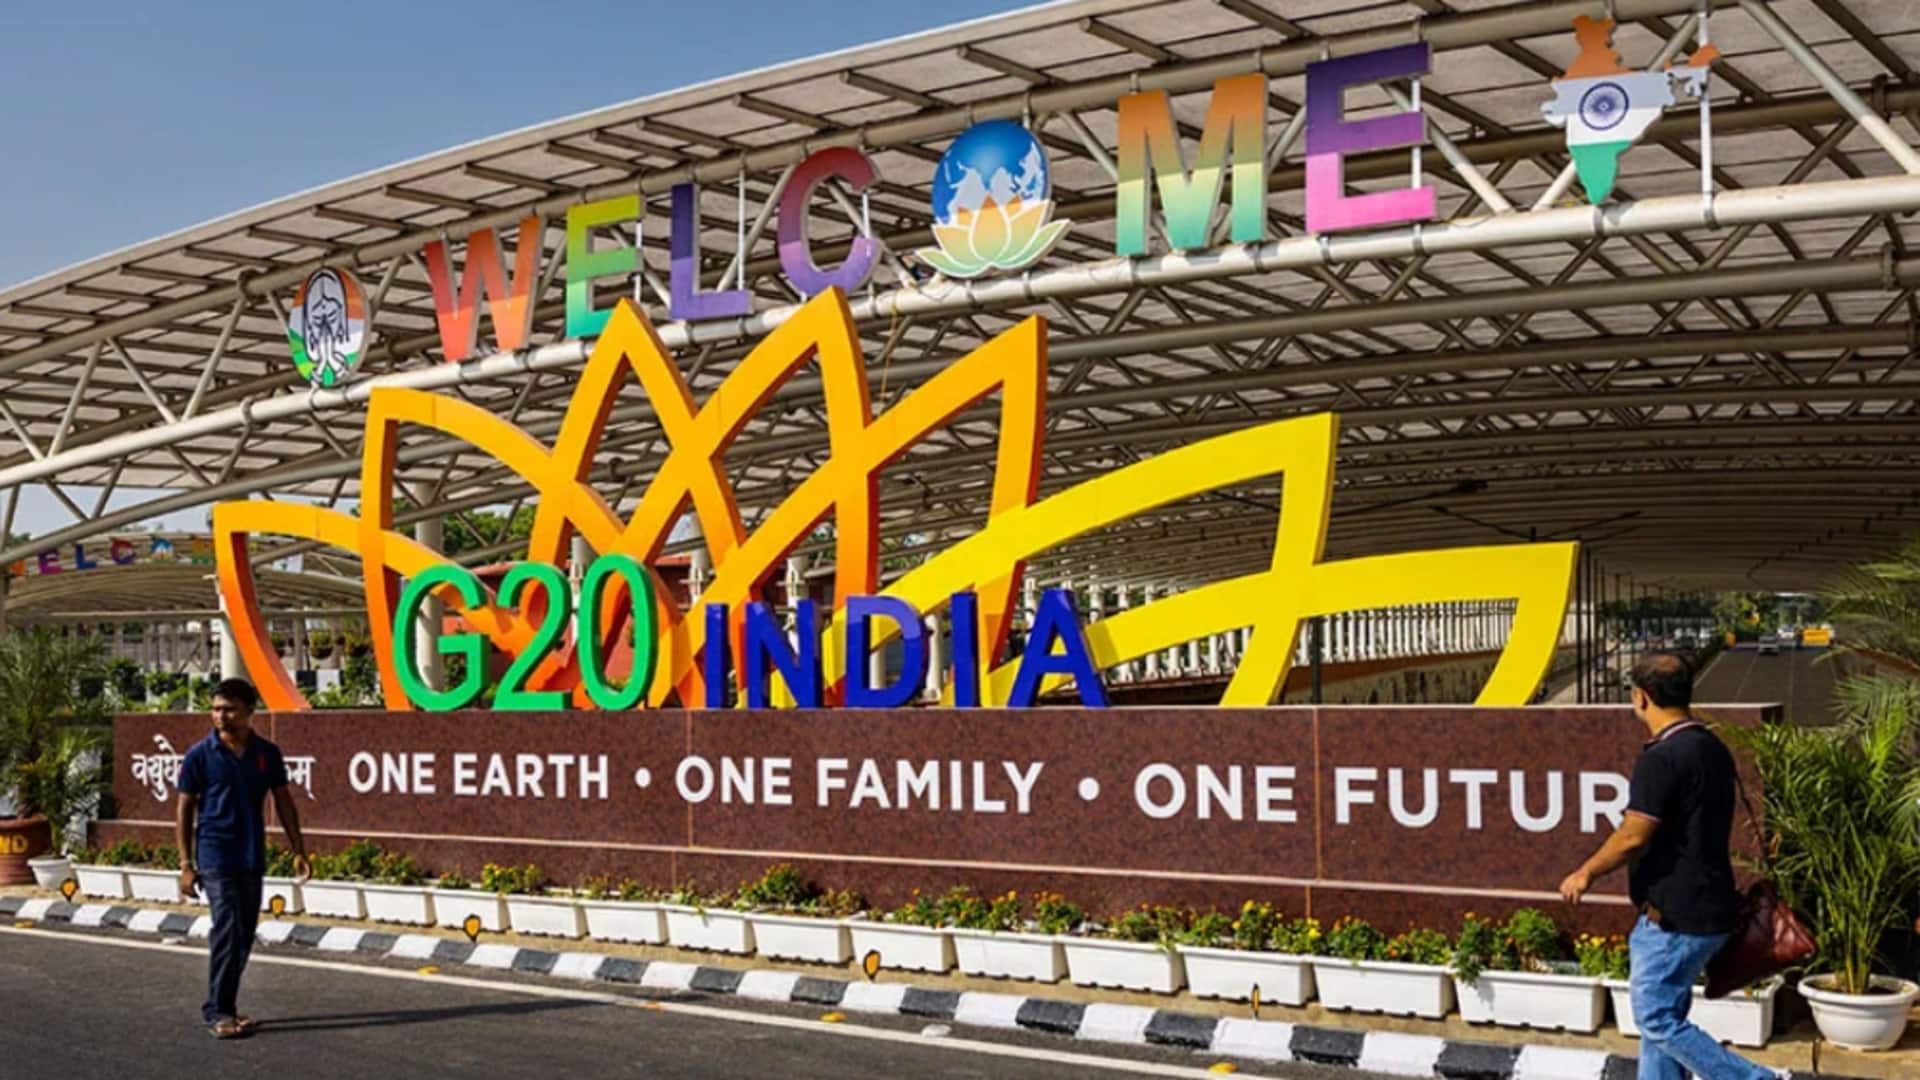 G-20 సమావేశం: భారత ప్రతిపాదిత శిలాజ ఇంధన విధానాన్ని వ్యతిరేకిస్తున్న చైనా, సౌదీ